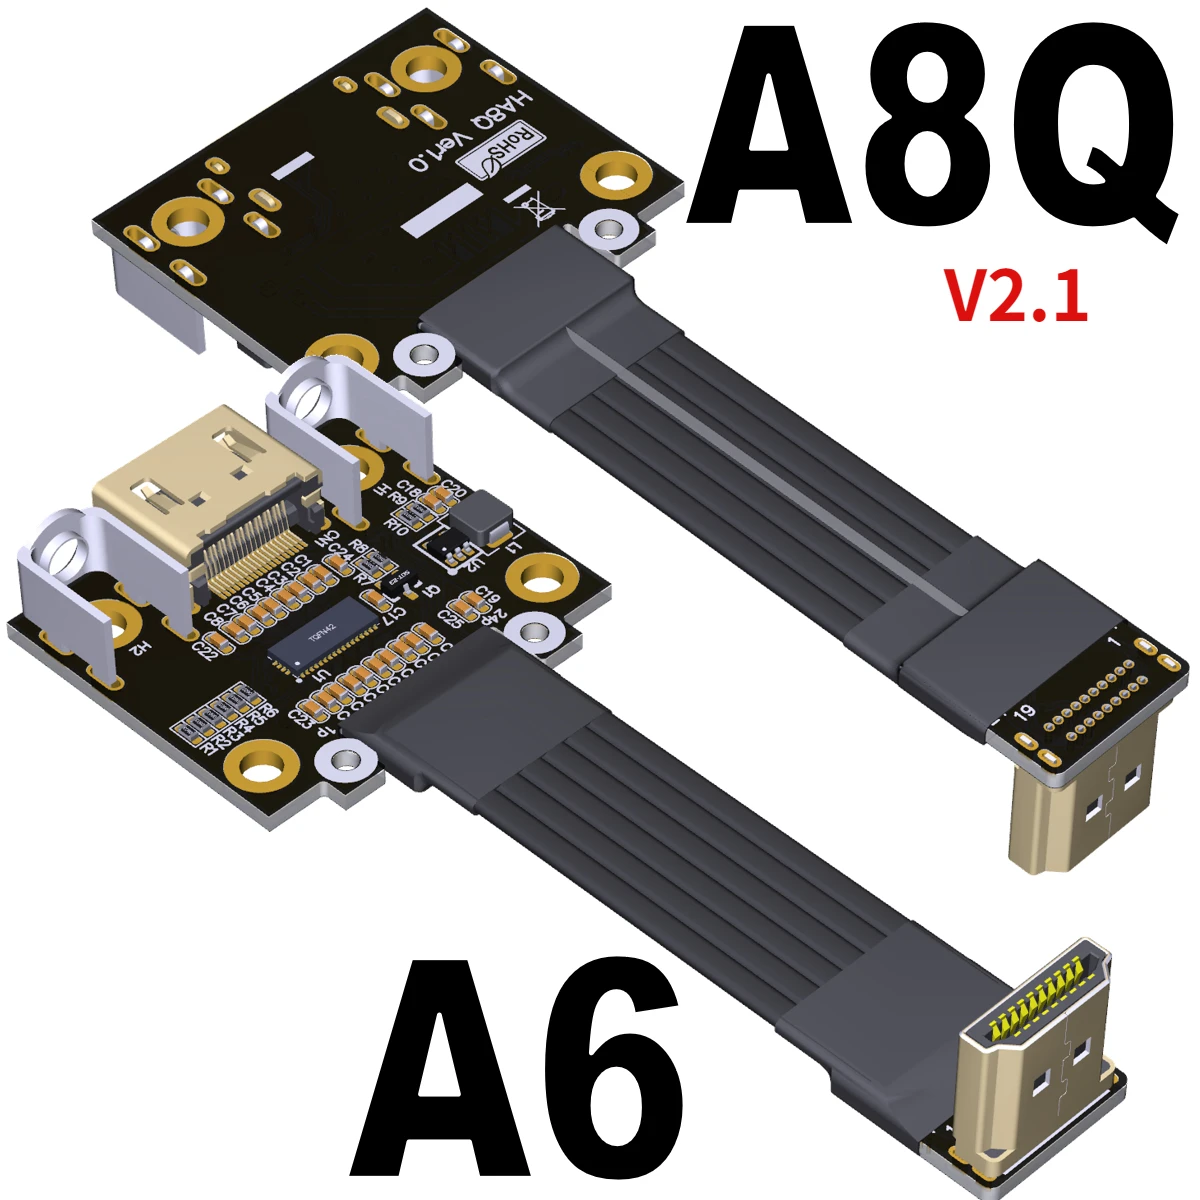 

Удлинительные кабели типа A-A 24P HD 2,1 штекер-гнездо, плоские ленточные удлинители 4K/144Hz FPC FPV GPU HD V2.1, удлинитель аудио и видео w Re-Driver IC